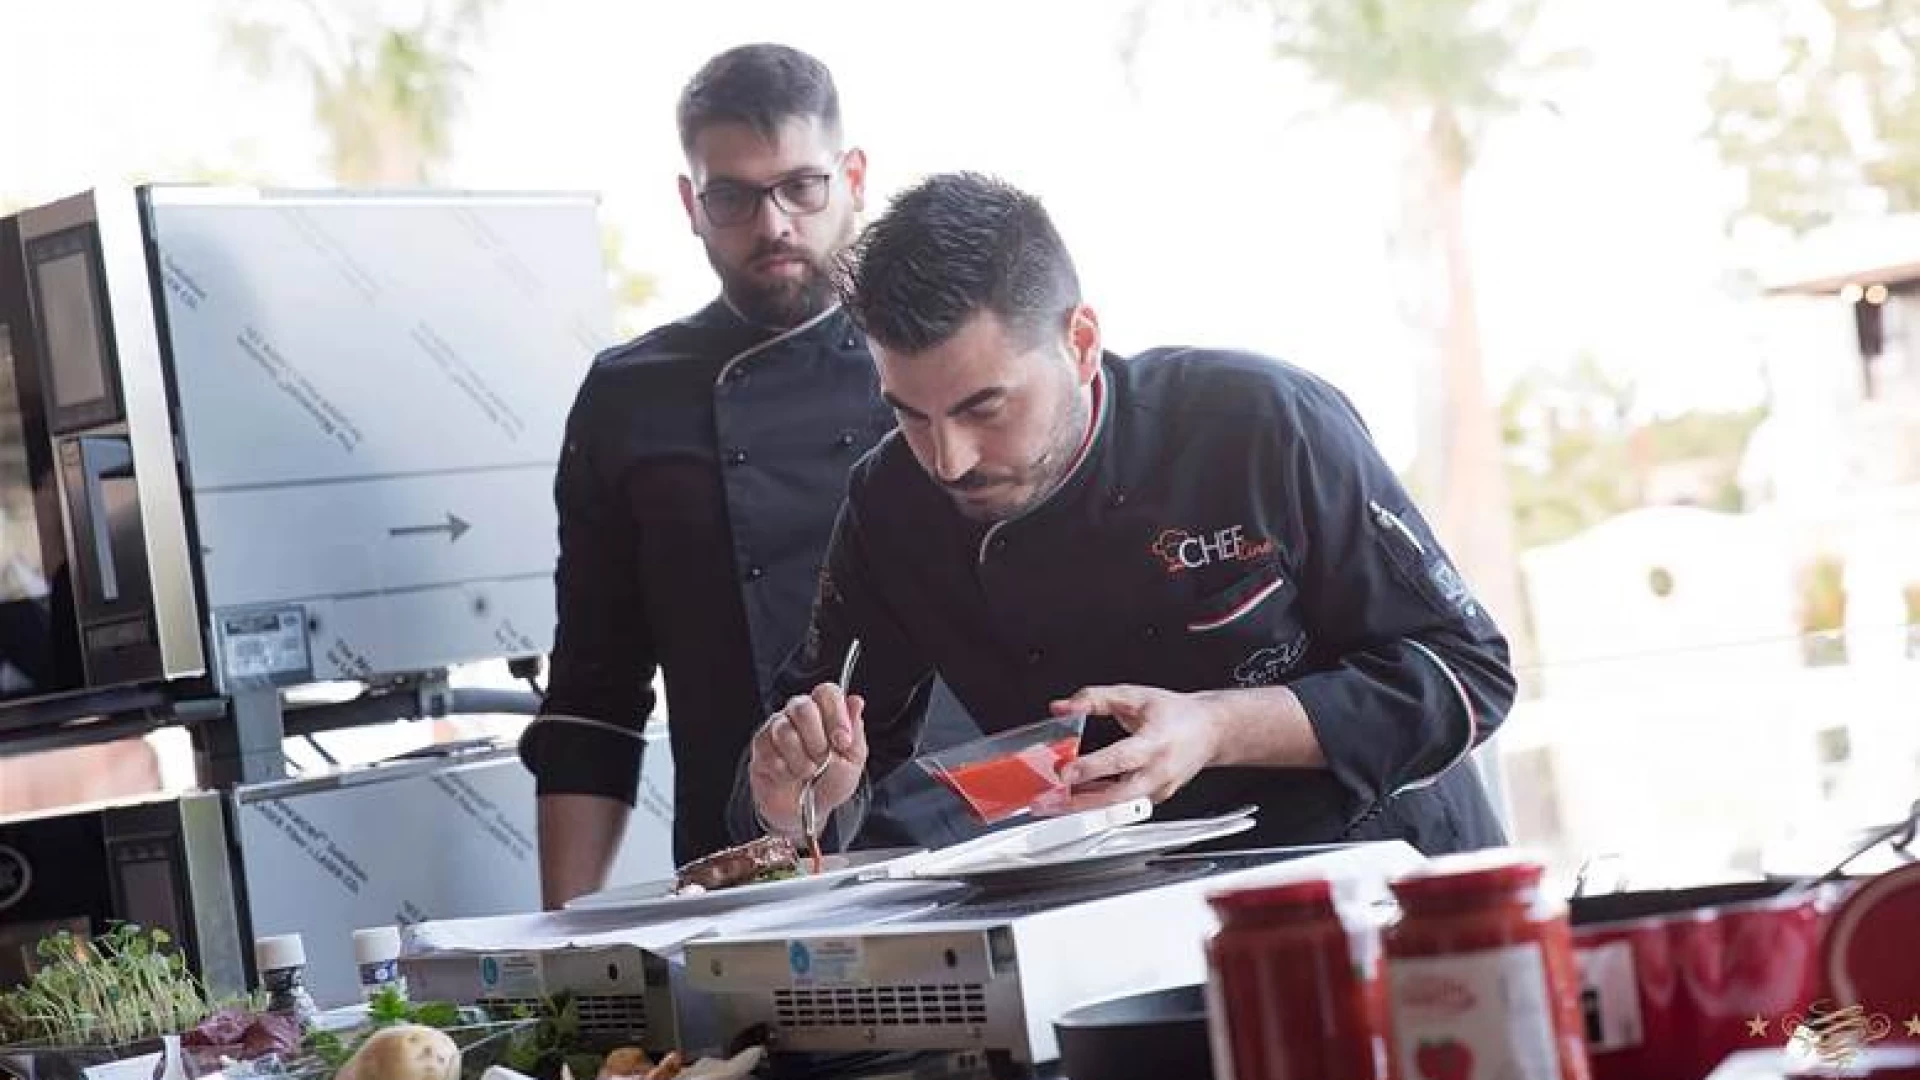 Chef Awards 2019, Stefano Rufo parteciperà al festival dei cuochi ad Assisi.